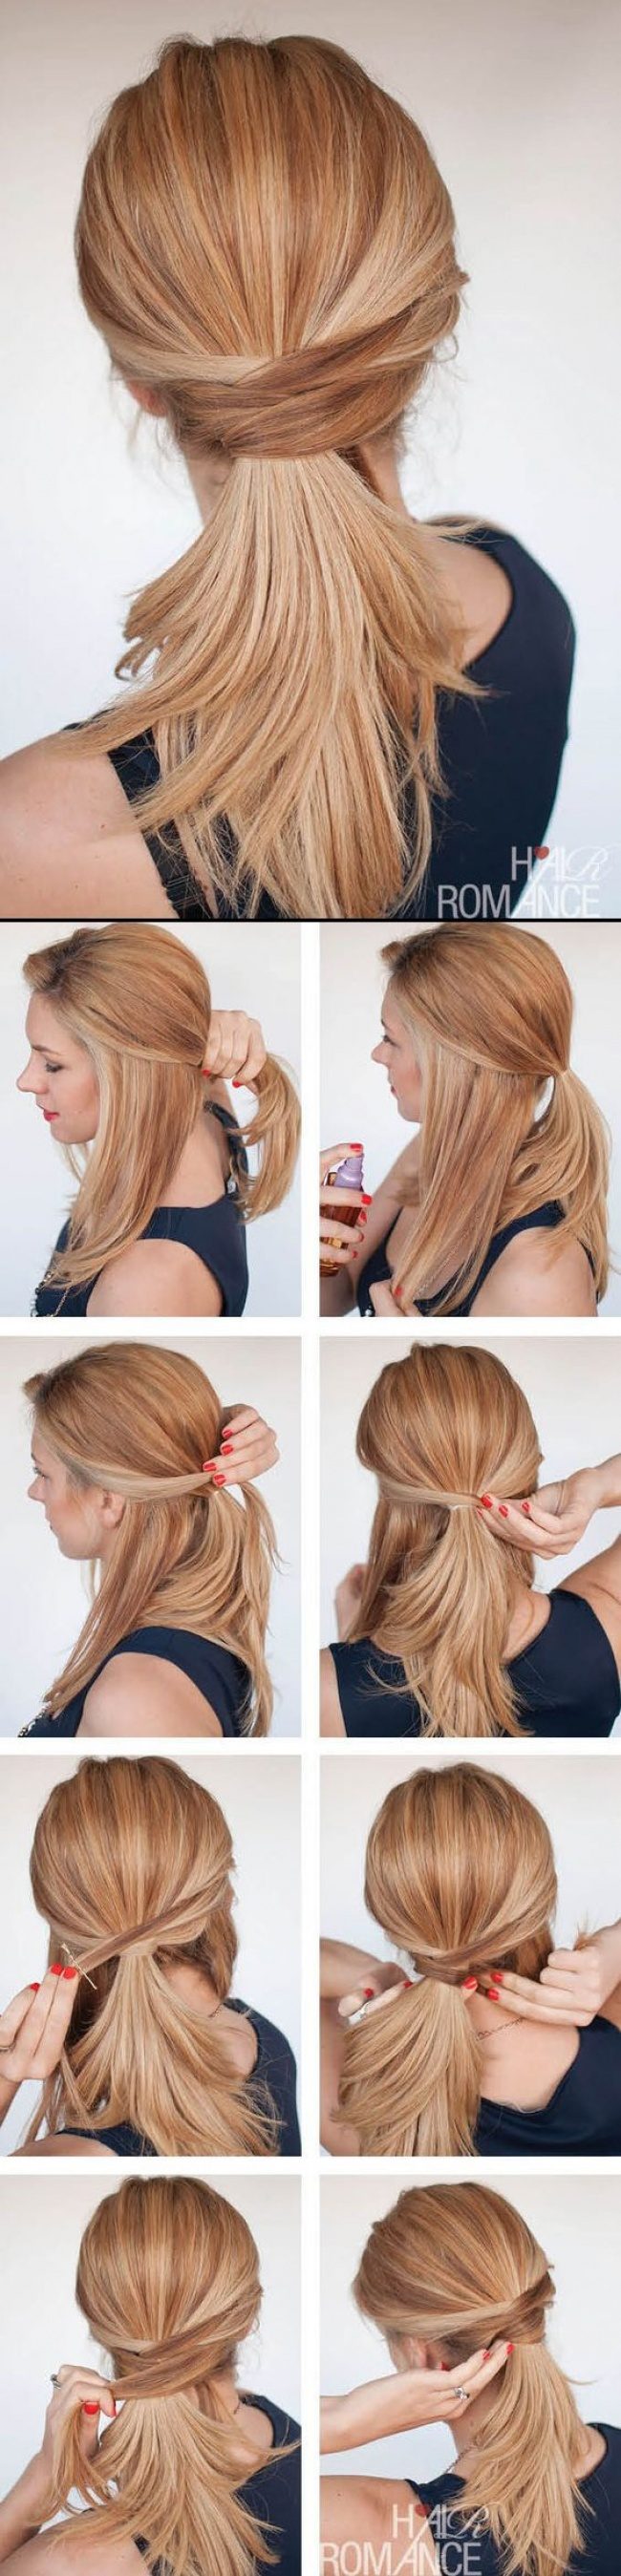 10 способов уложить волосы, если вы опаздываете